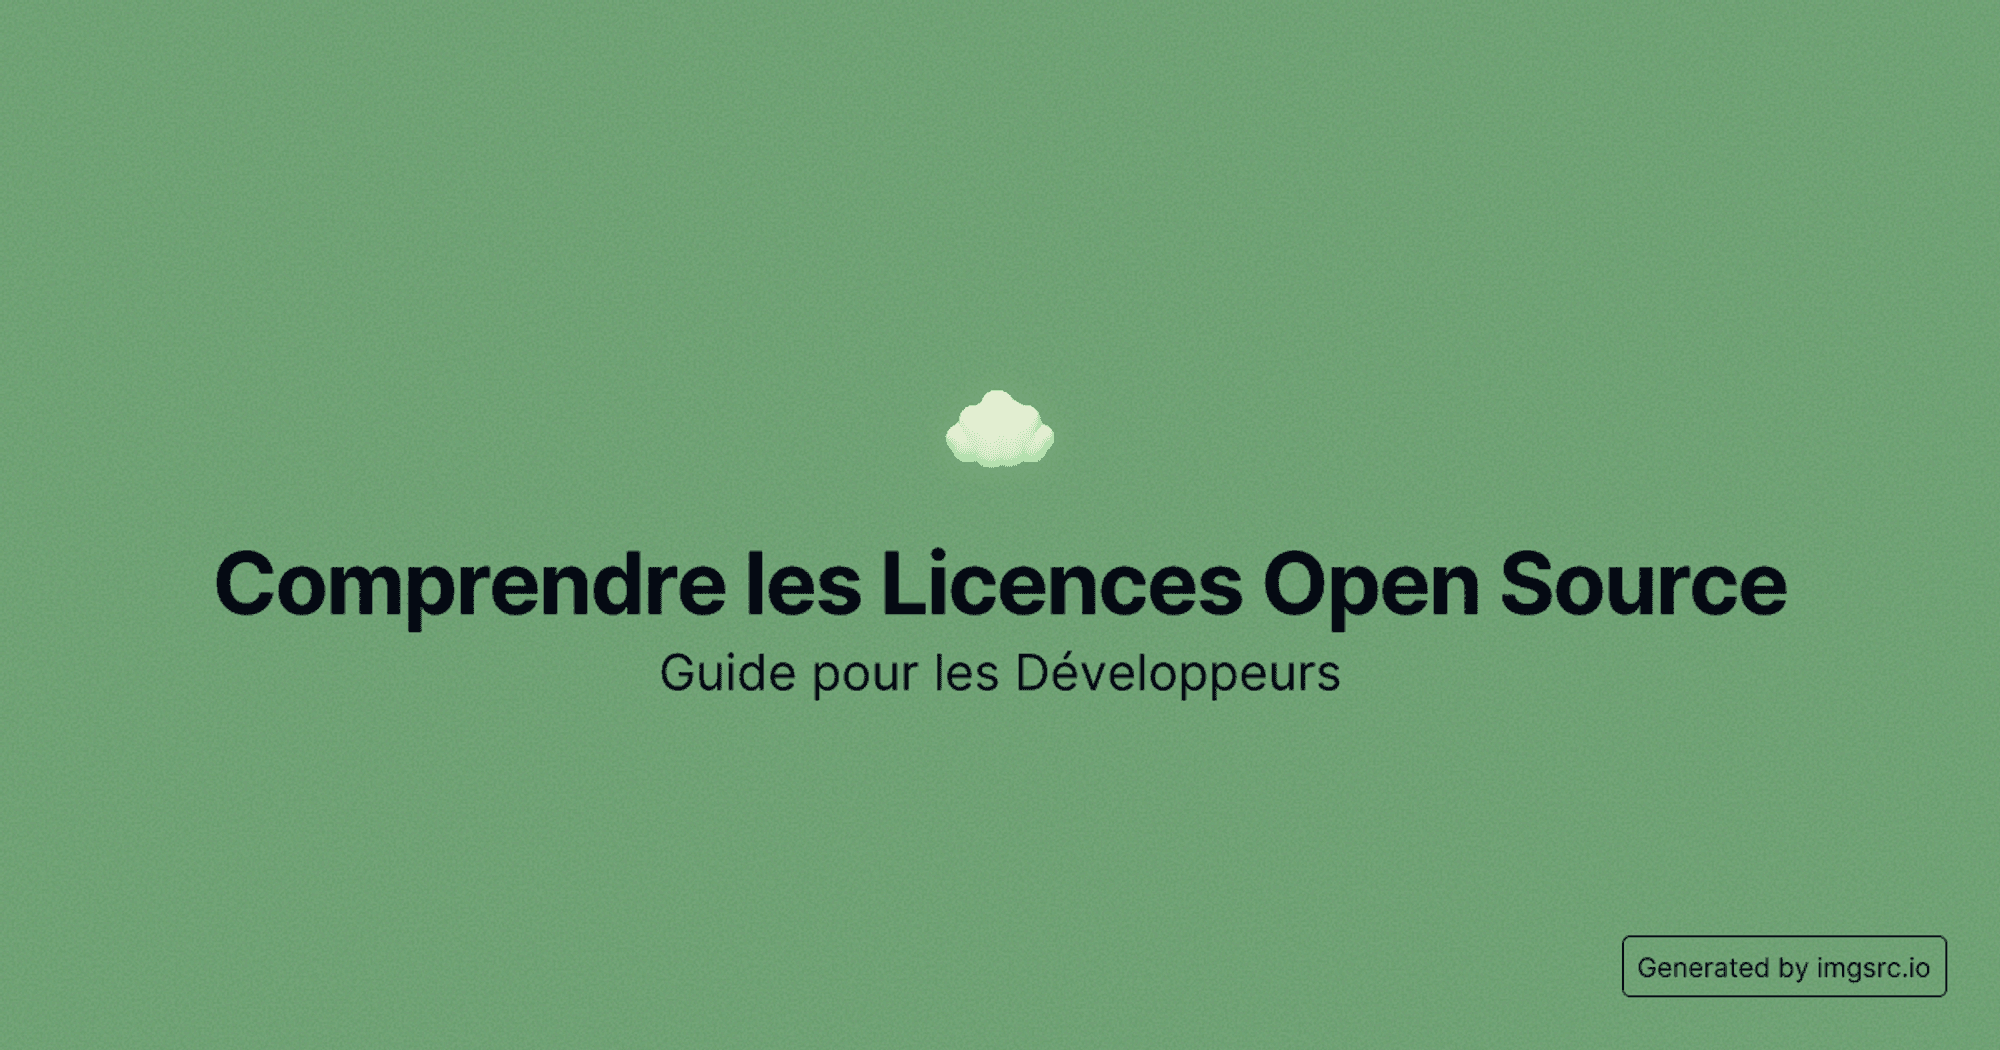 Comprendre les Licences Open Source: Guide pour les Développeurs